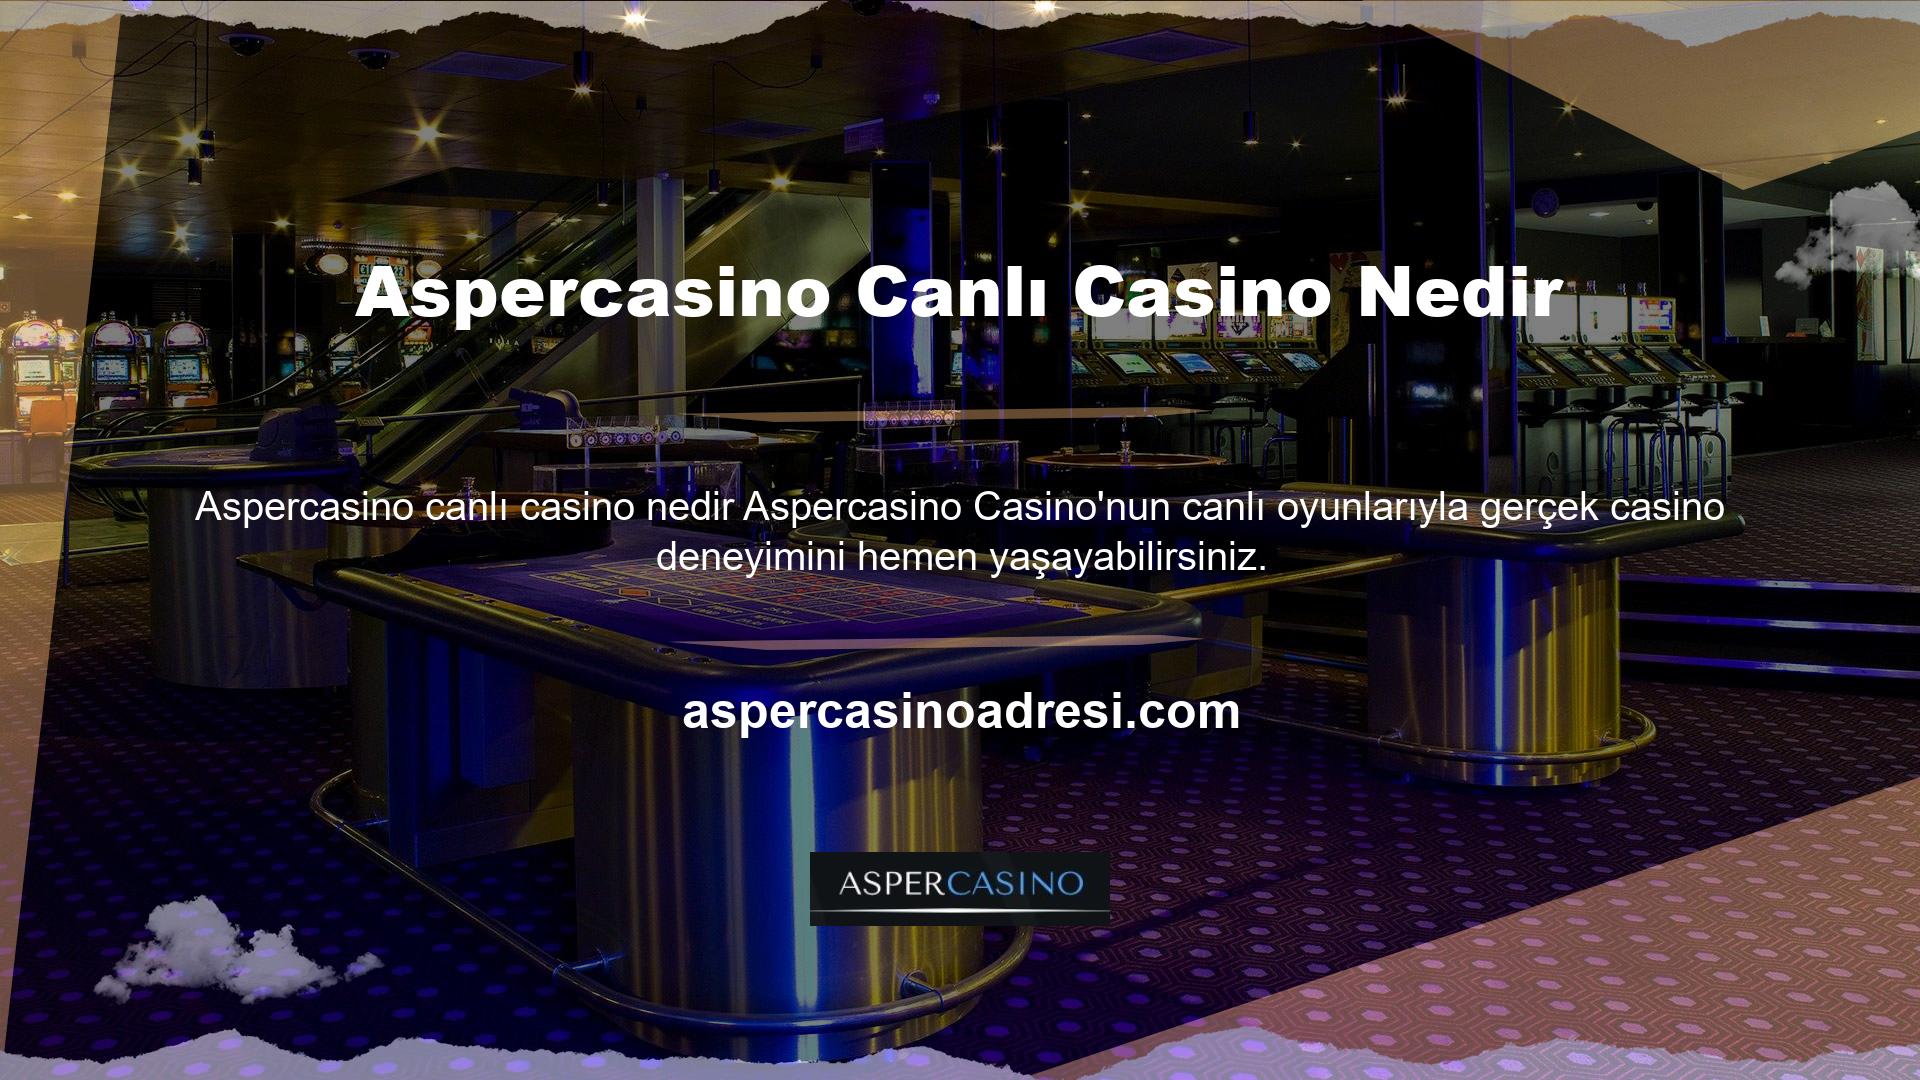 Canlı casino özellikleri şunları içerir: Büyük başarı elde ettiği bildirilen sistemler ilgi çekici